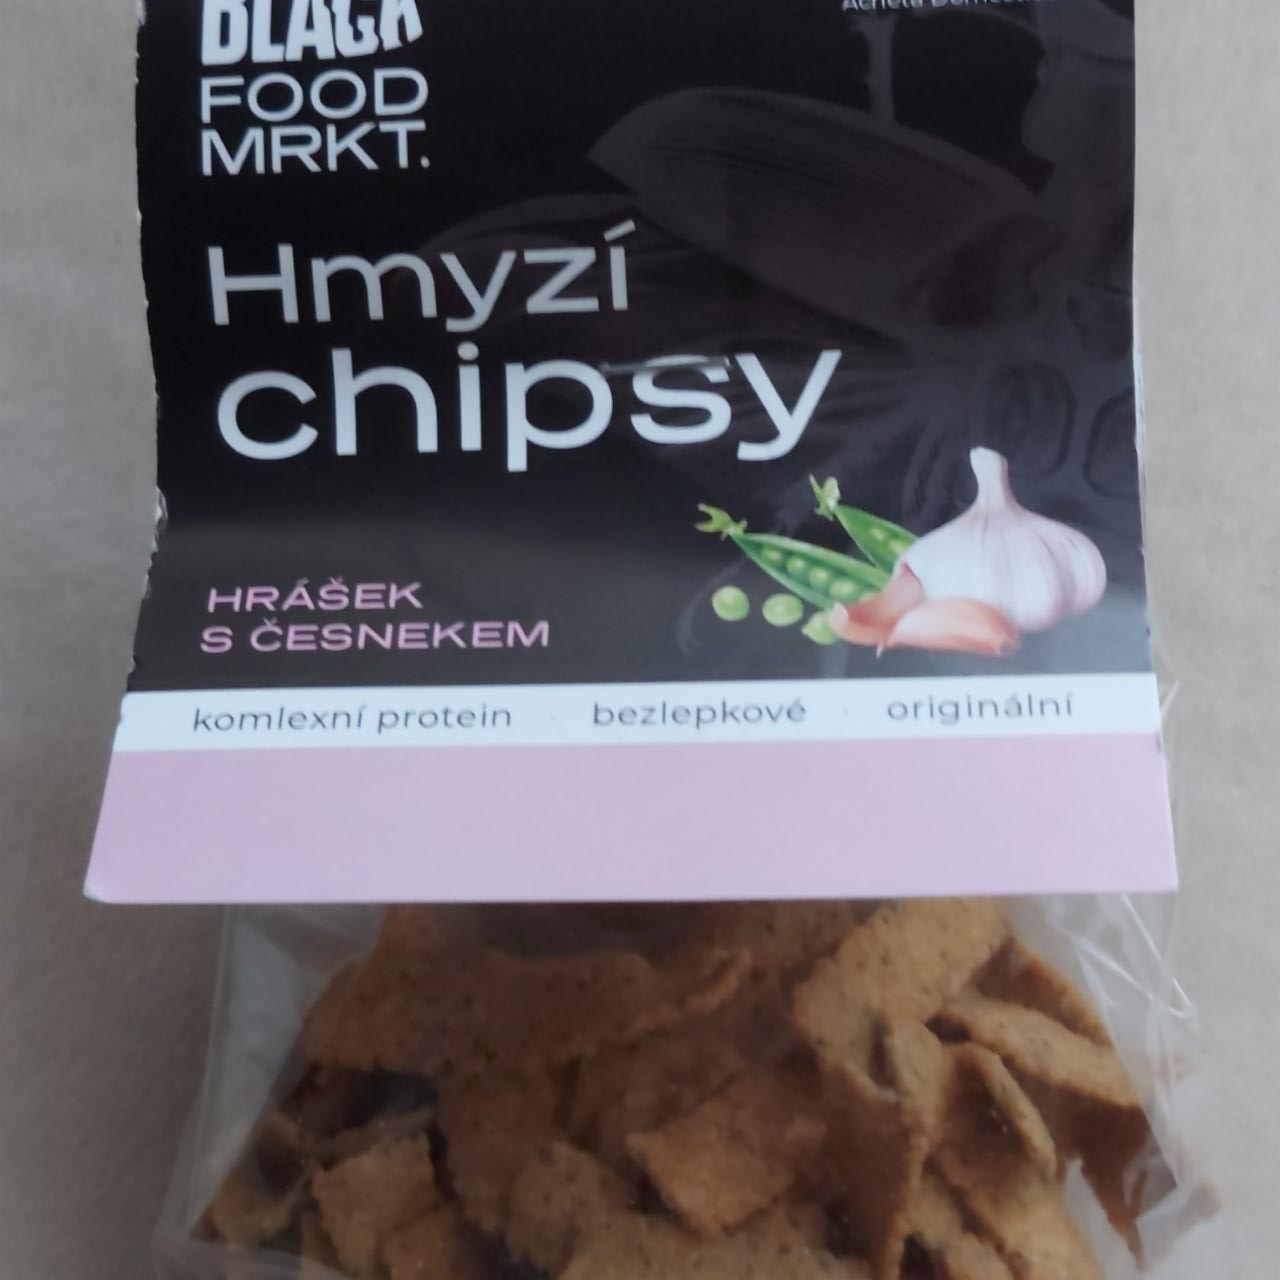 Fotografie - Hmyzí chipsy hrášek s česnekem Black food mrkt